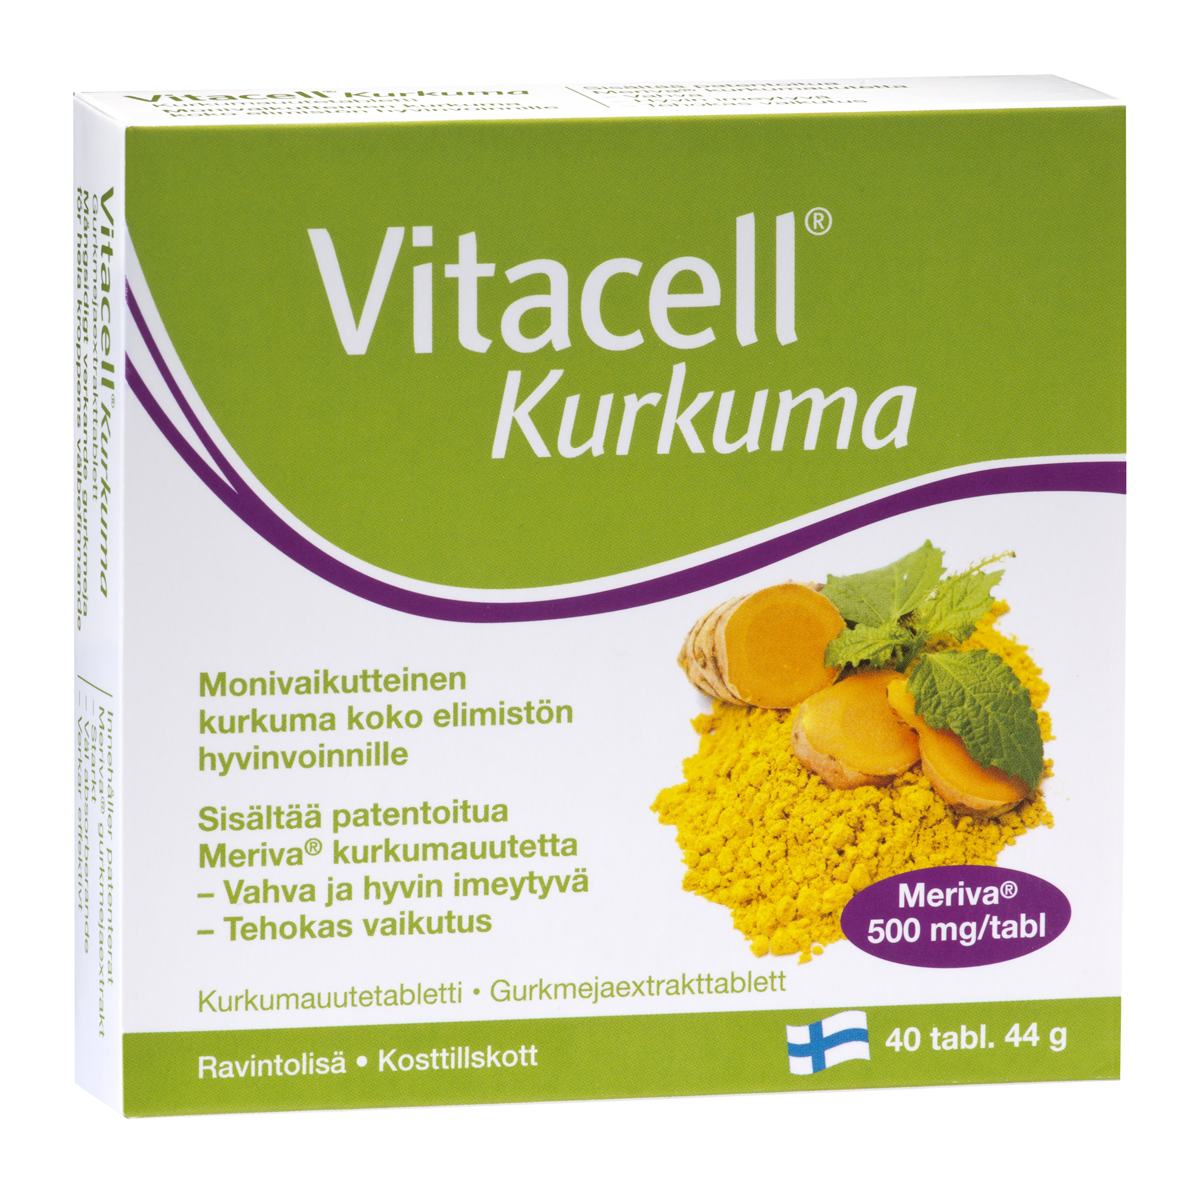 Витамины с экстрактом куркумы для очищения организма и поддержания иммунитета Vitacell Kurkuma (ФИНЛЯНДИЯ, 40 таб)